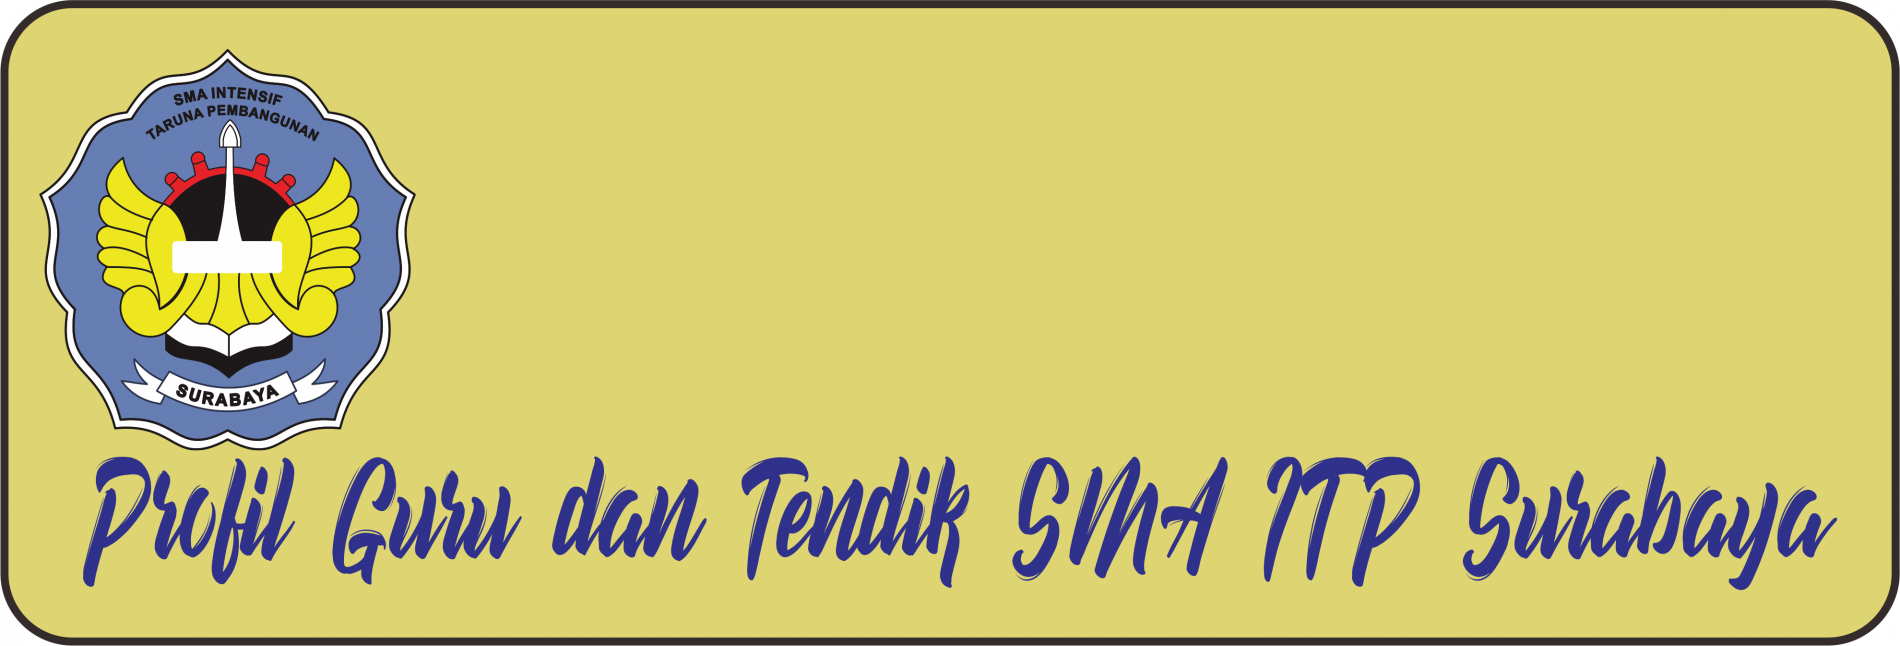 Profil GURU dan Tendik SMA ITP Surabaya 2021